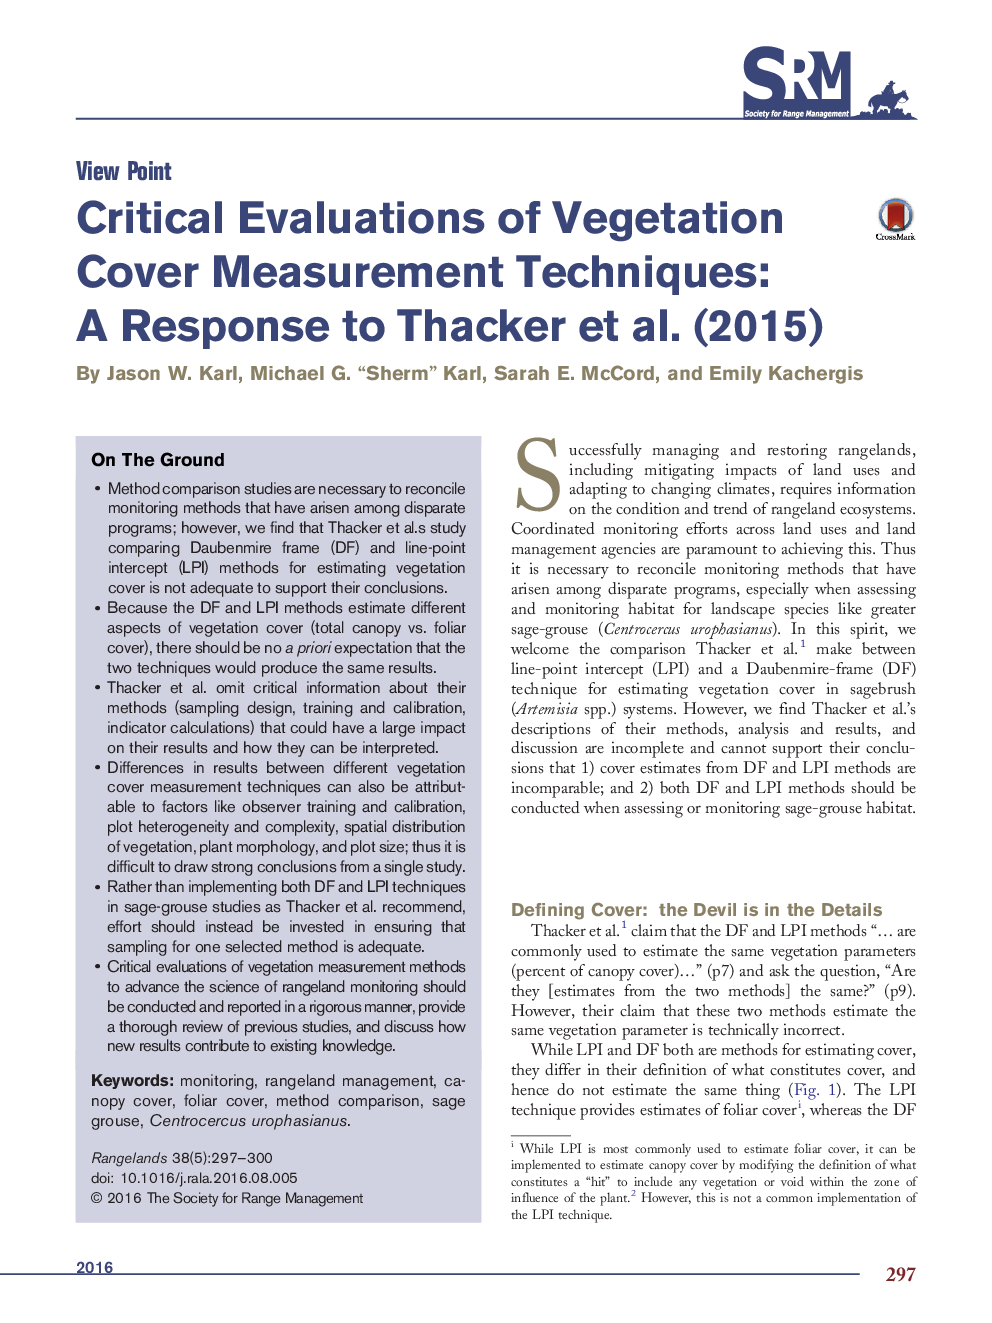 Critical Evaluations of Vegetation Cover Measurement Techniques: A Response to Thacker et al. (2015)